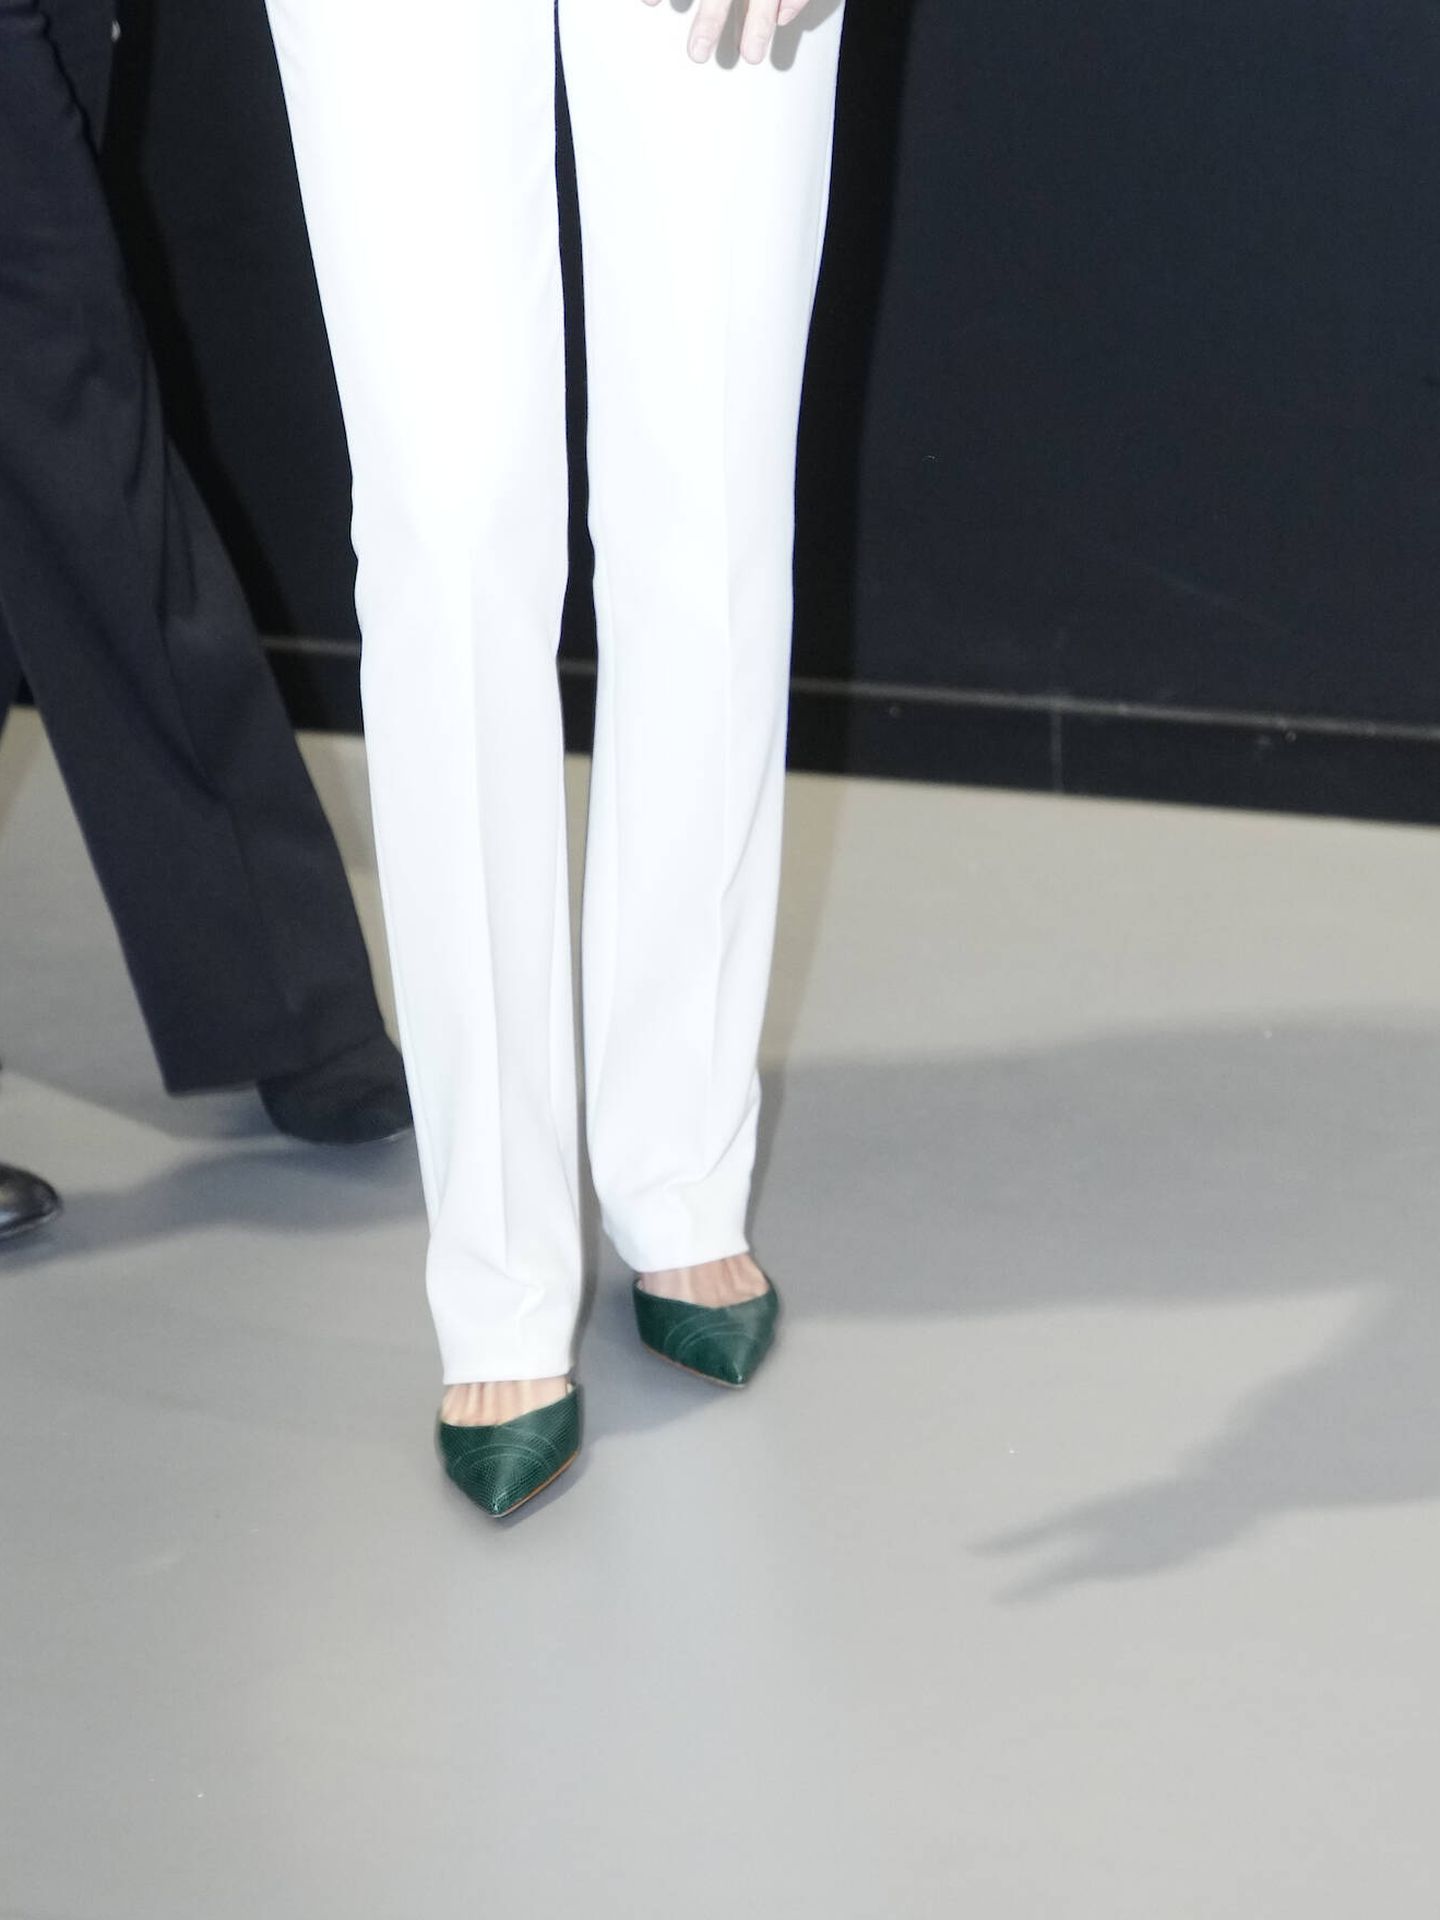 Detalle del color de los zapatos de la reina Letizia. (Limited Pictures)